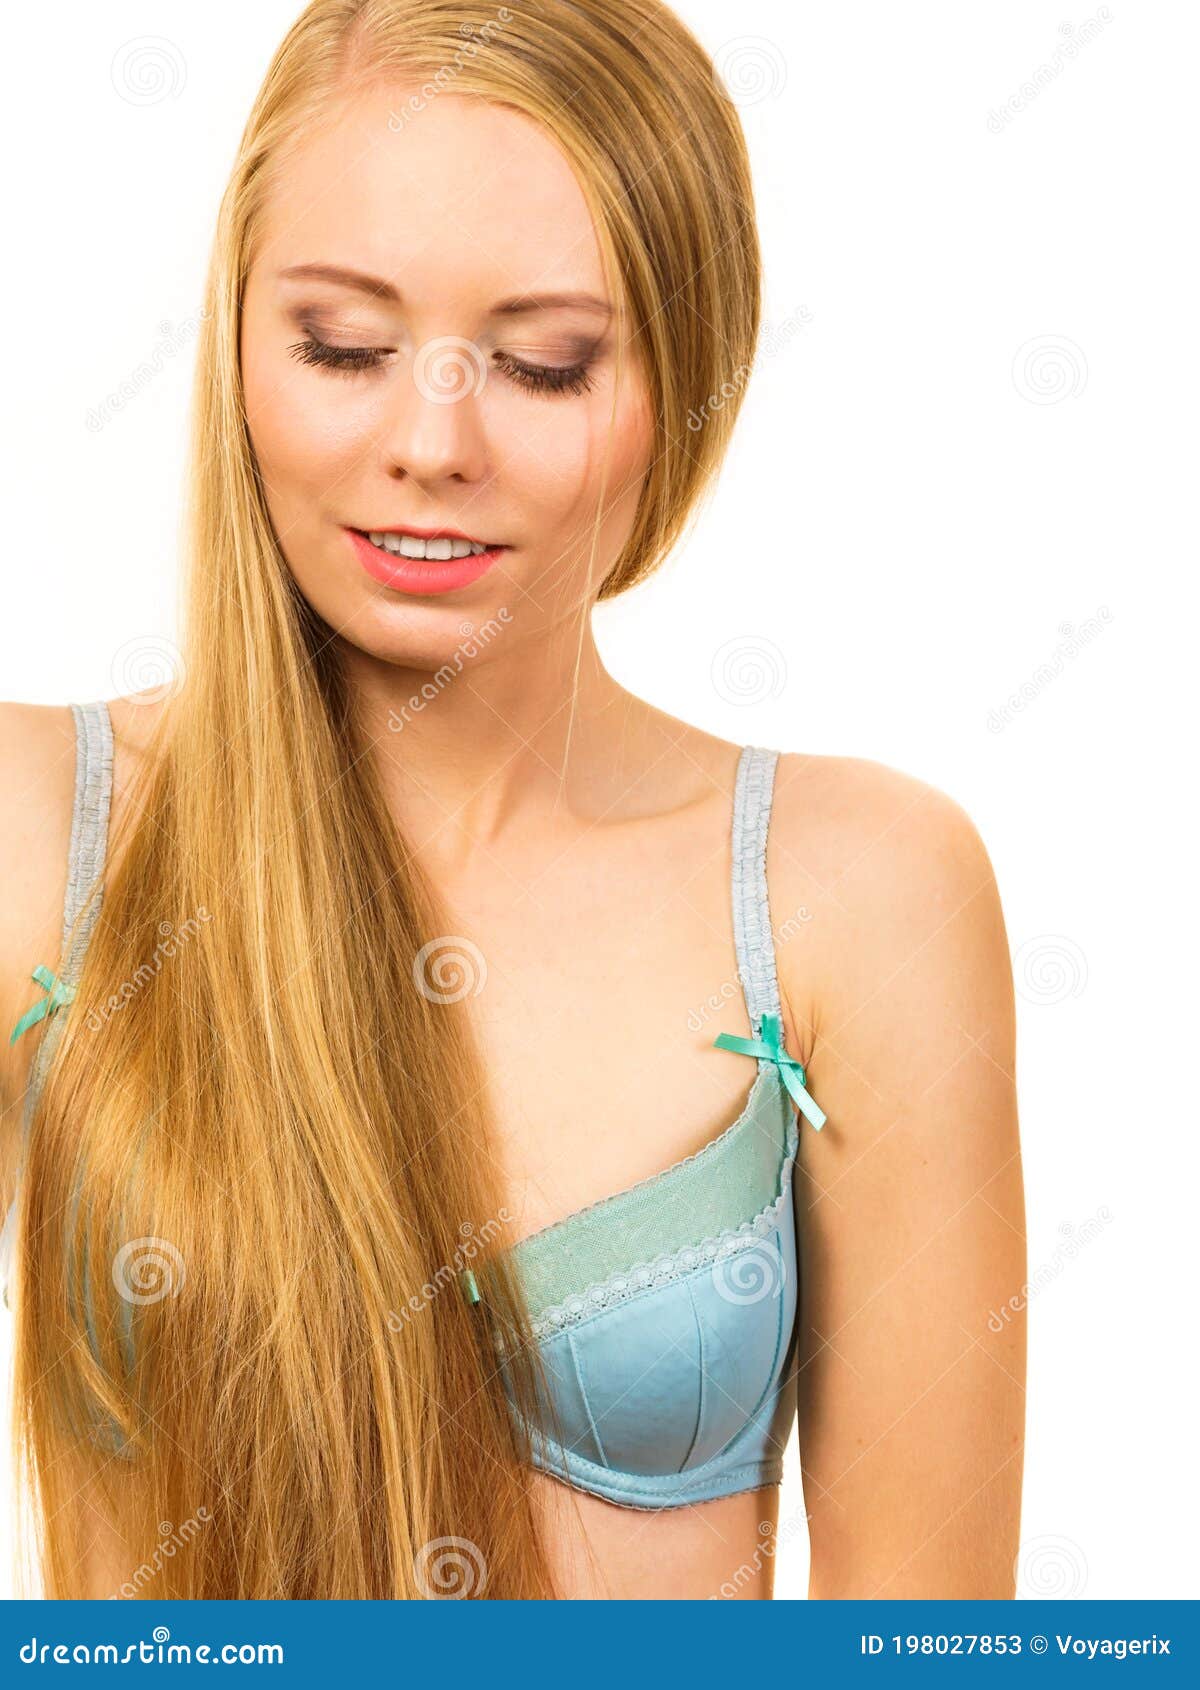 Girl long hair wearing bra stock image. Image of care - 198027853